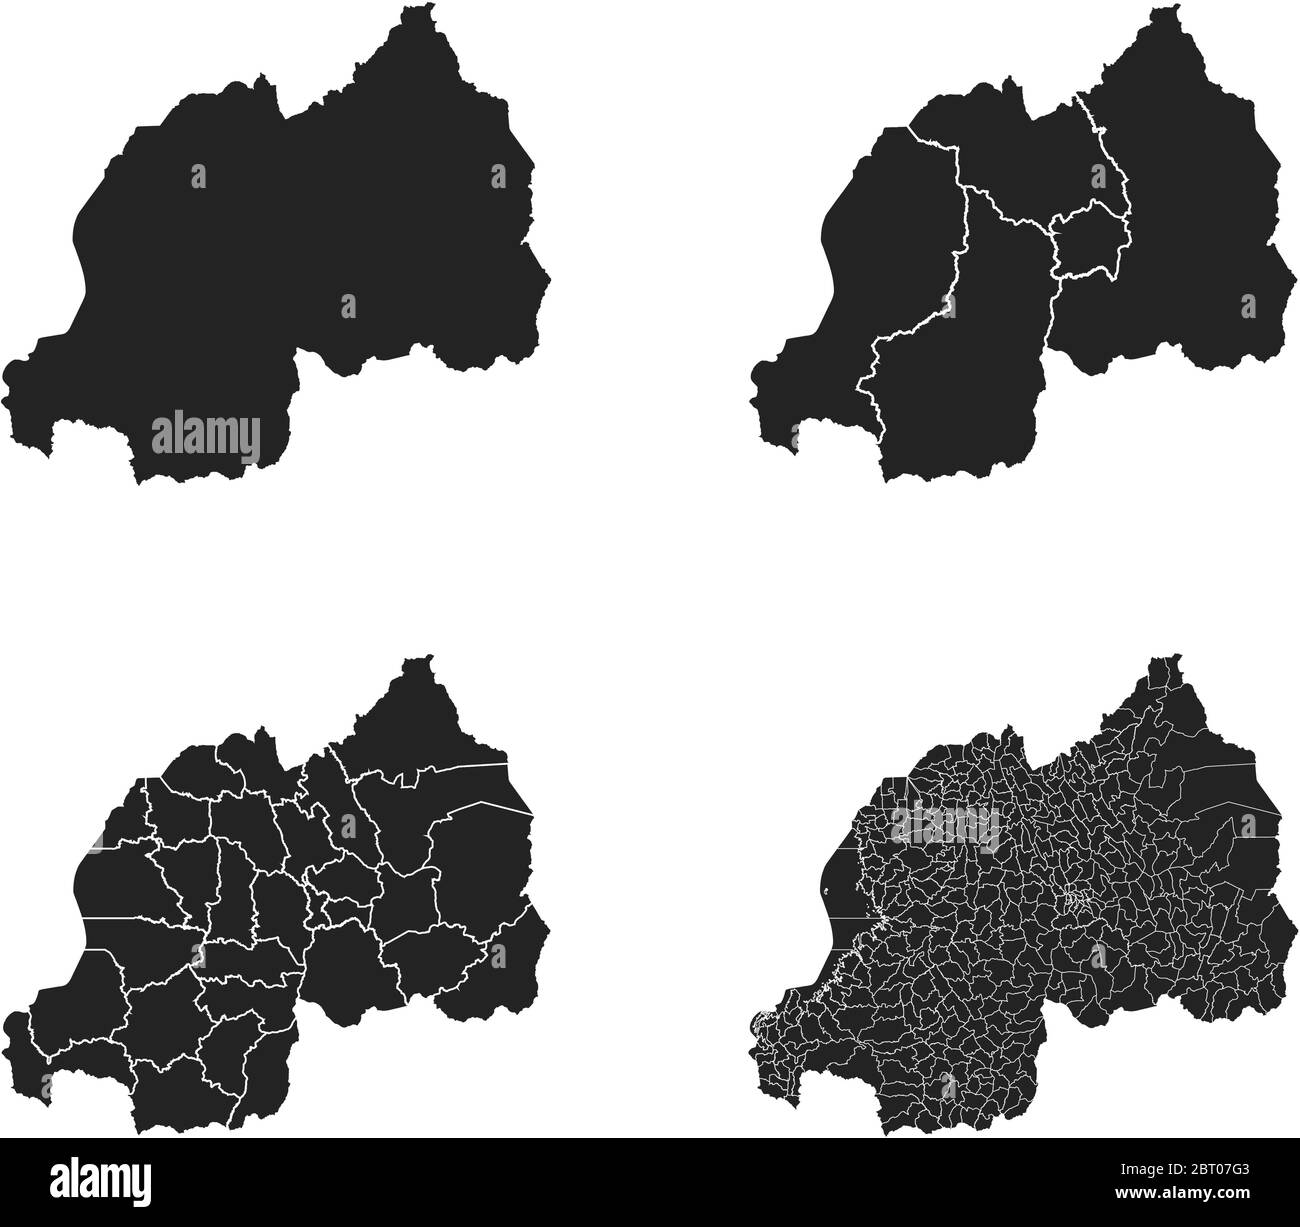 Cartes vectorielles du Rwanda avec régions administratives, municipalités, départements, frontières Illustration de Vecteur